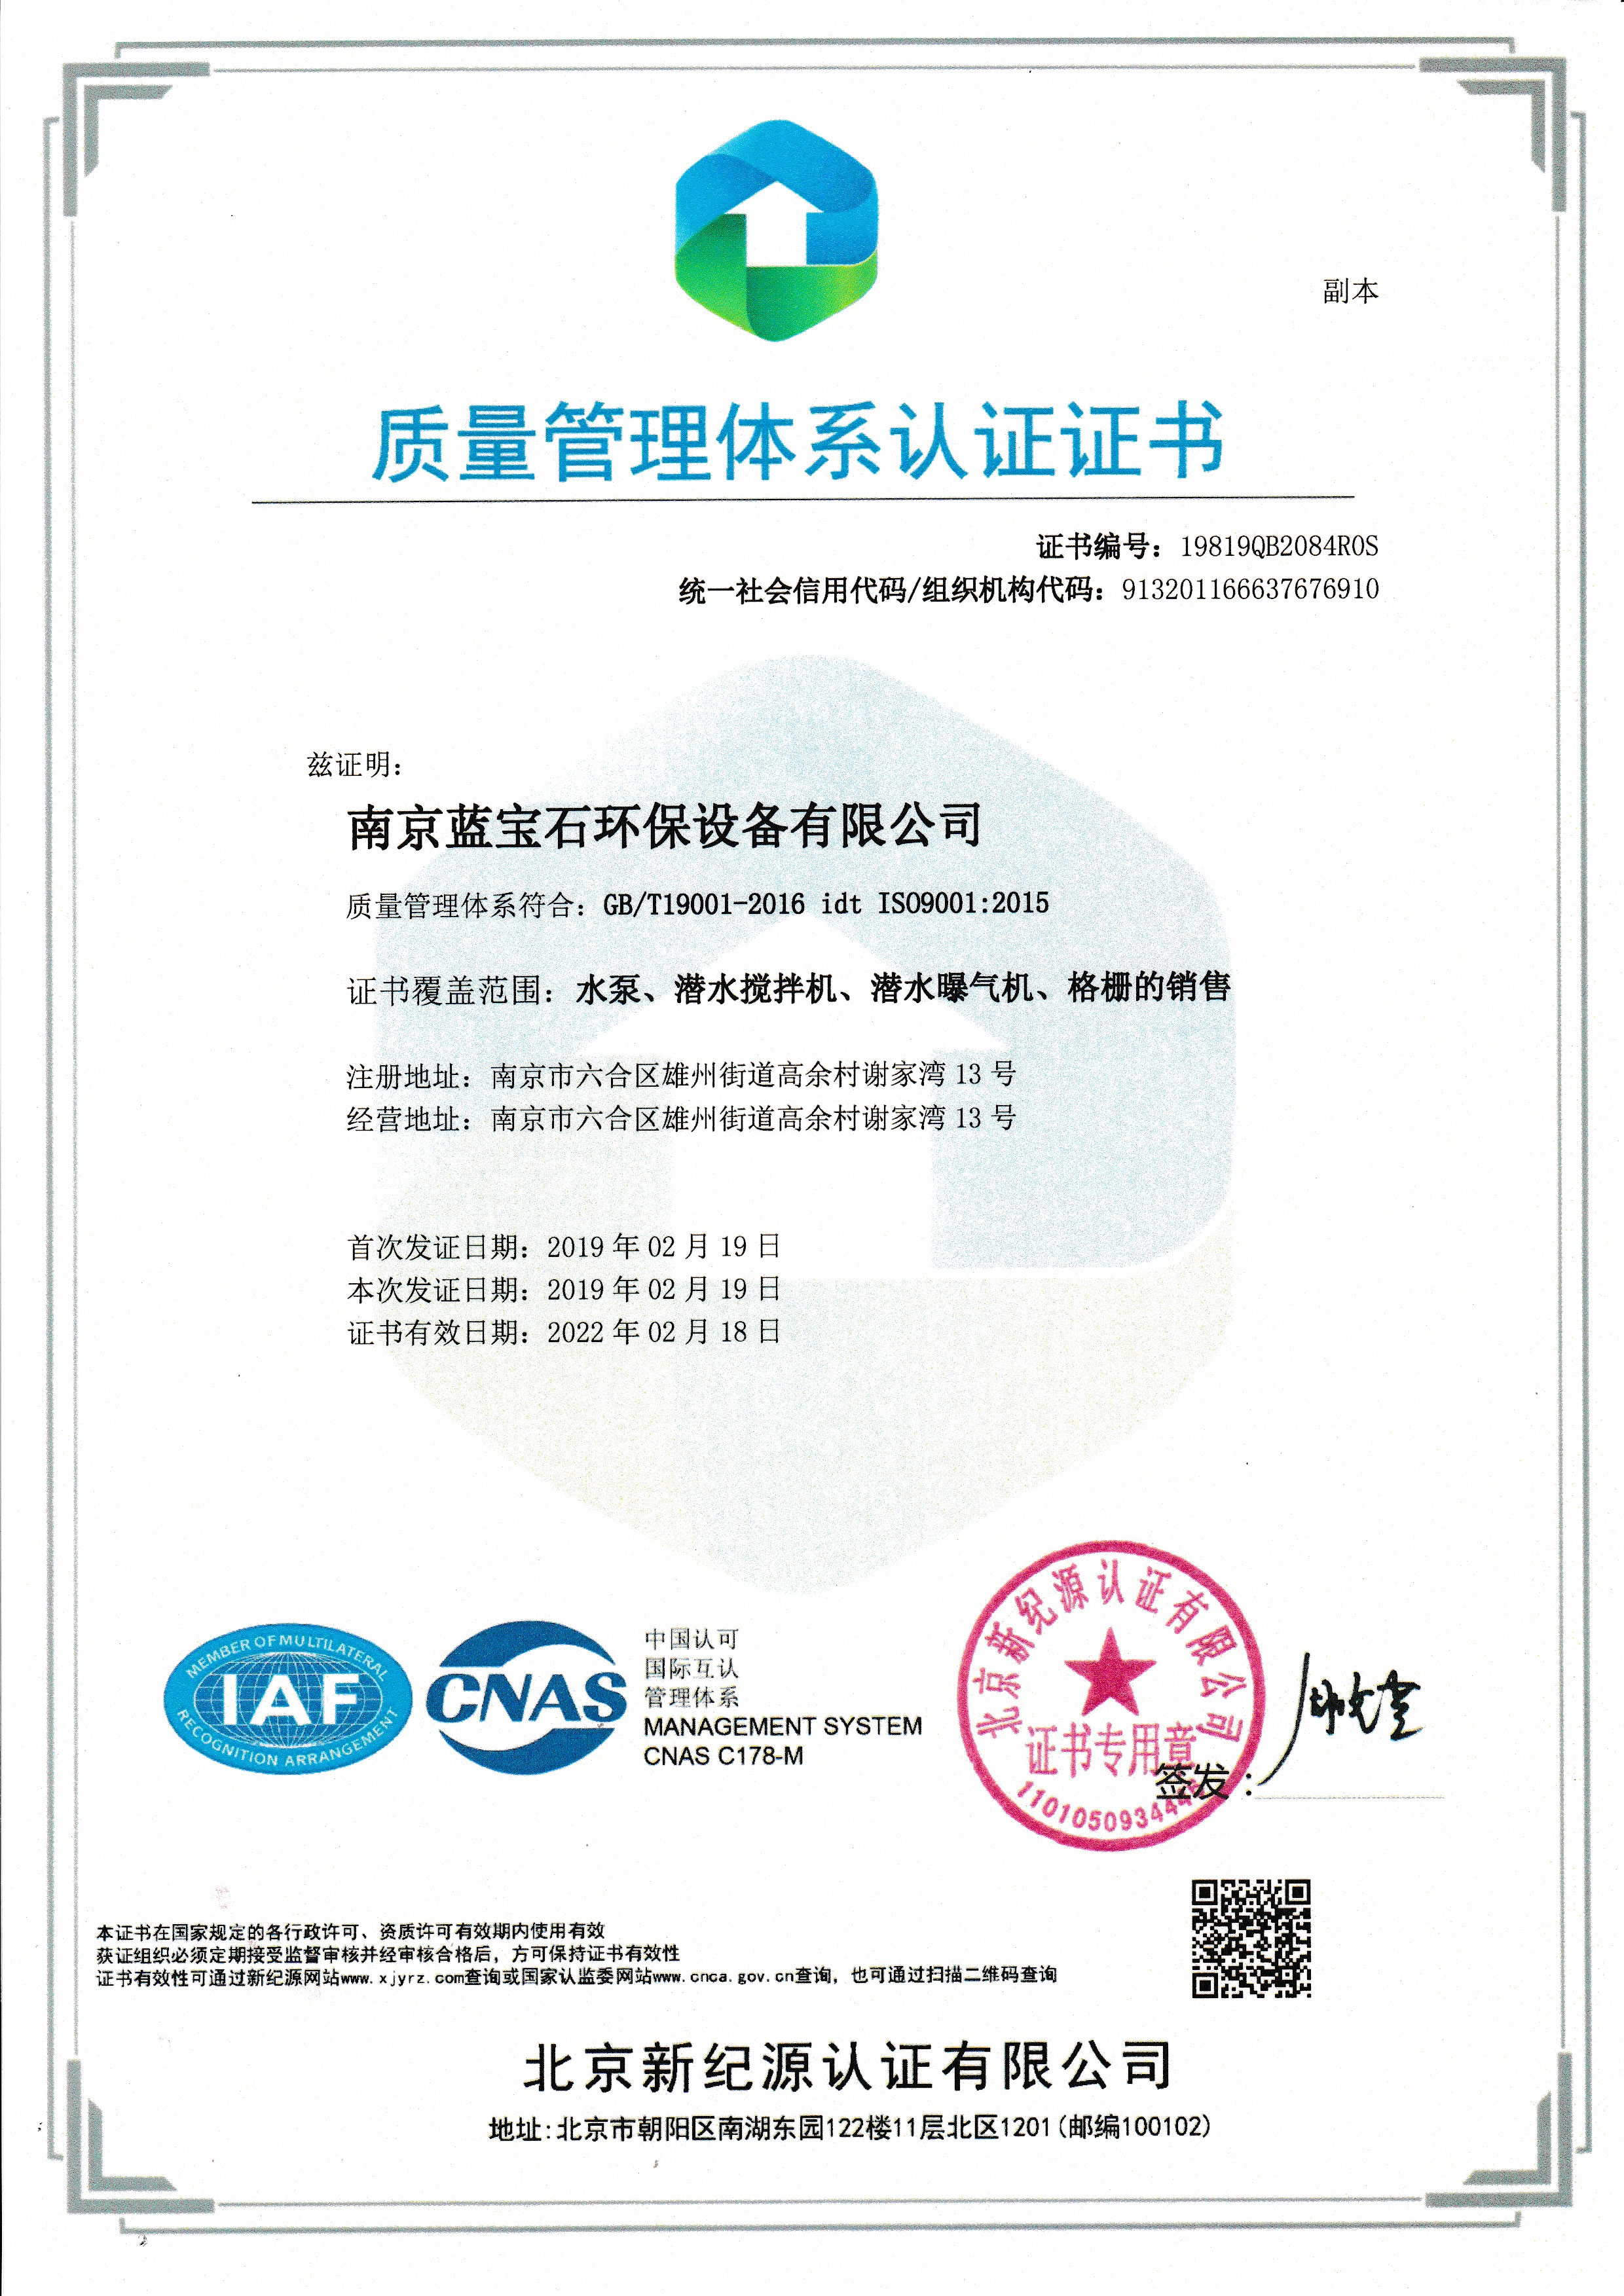 南京蓝宝石环保设备-beats官网有限公司通过ISO9001质量体系认证